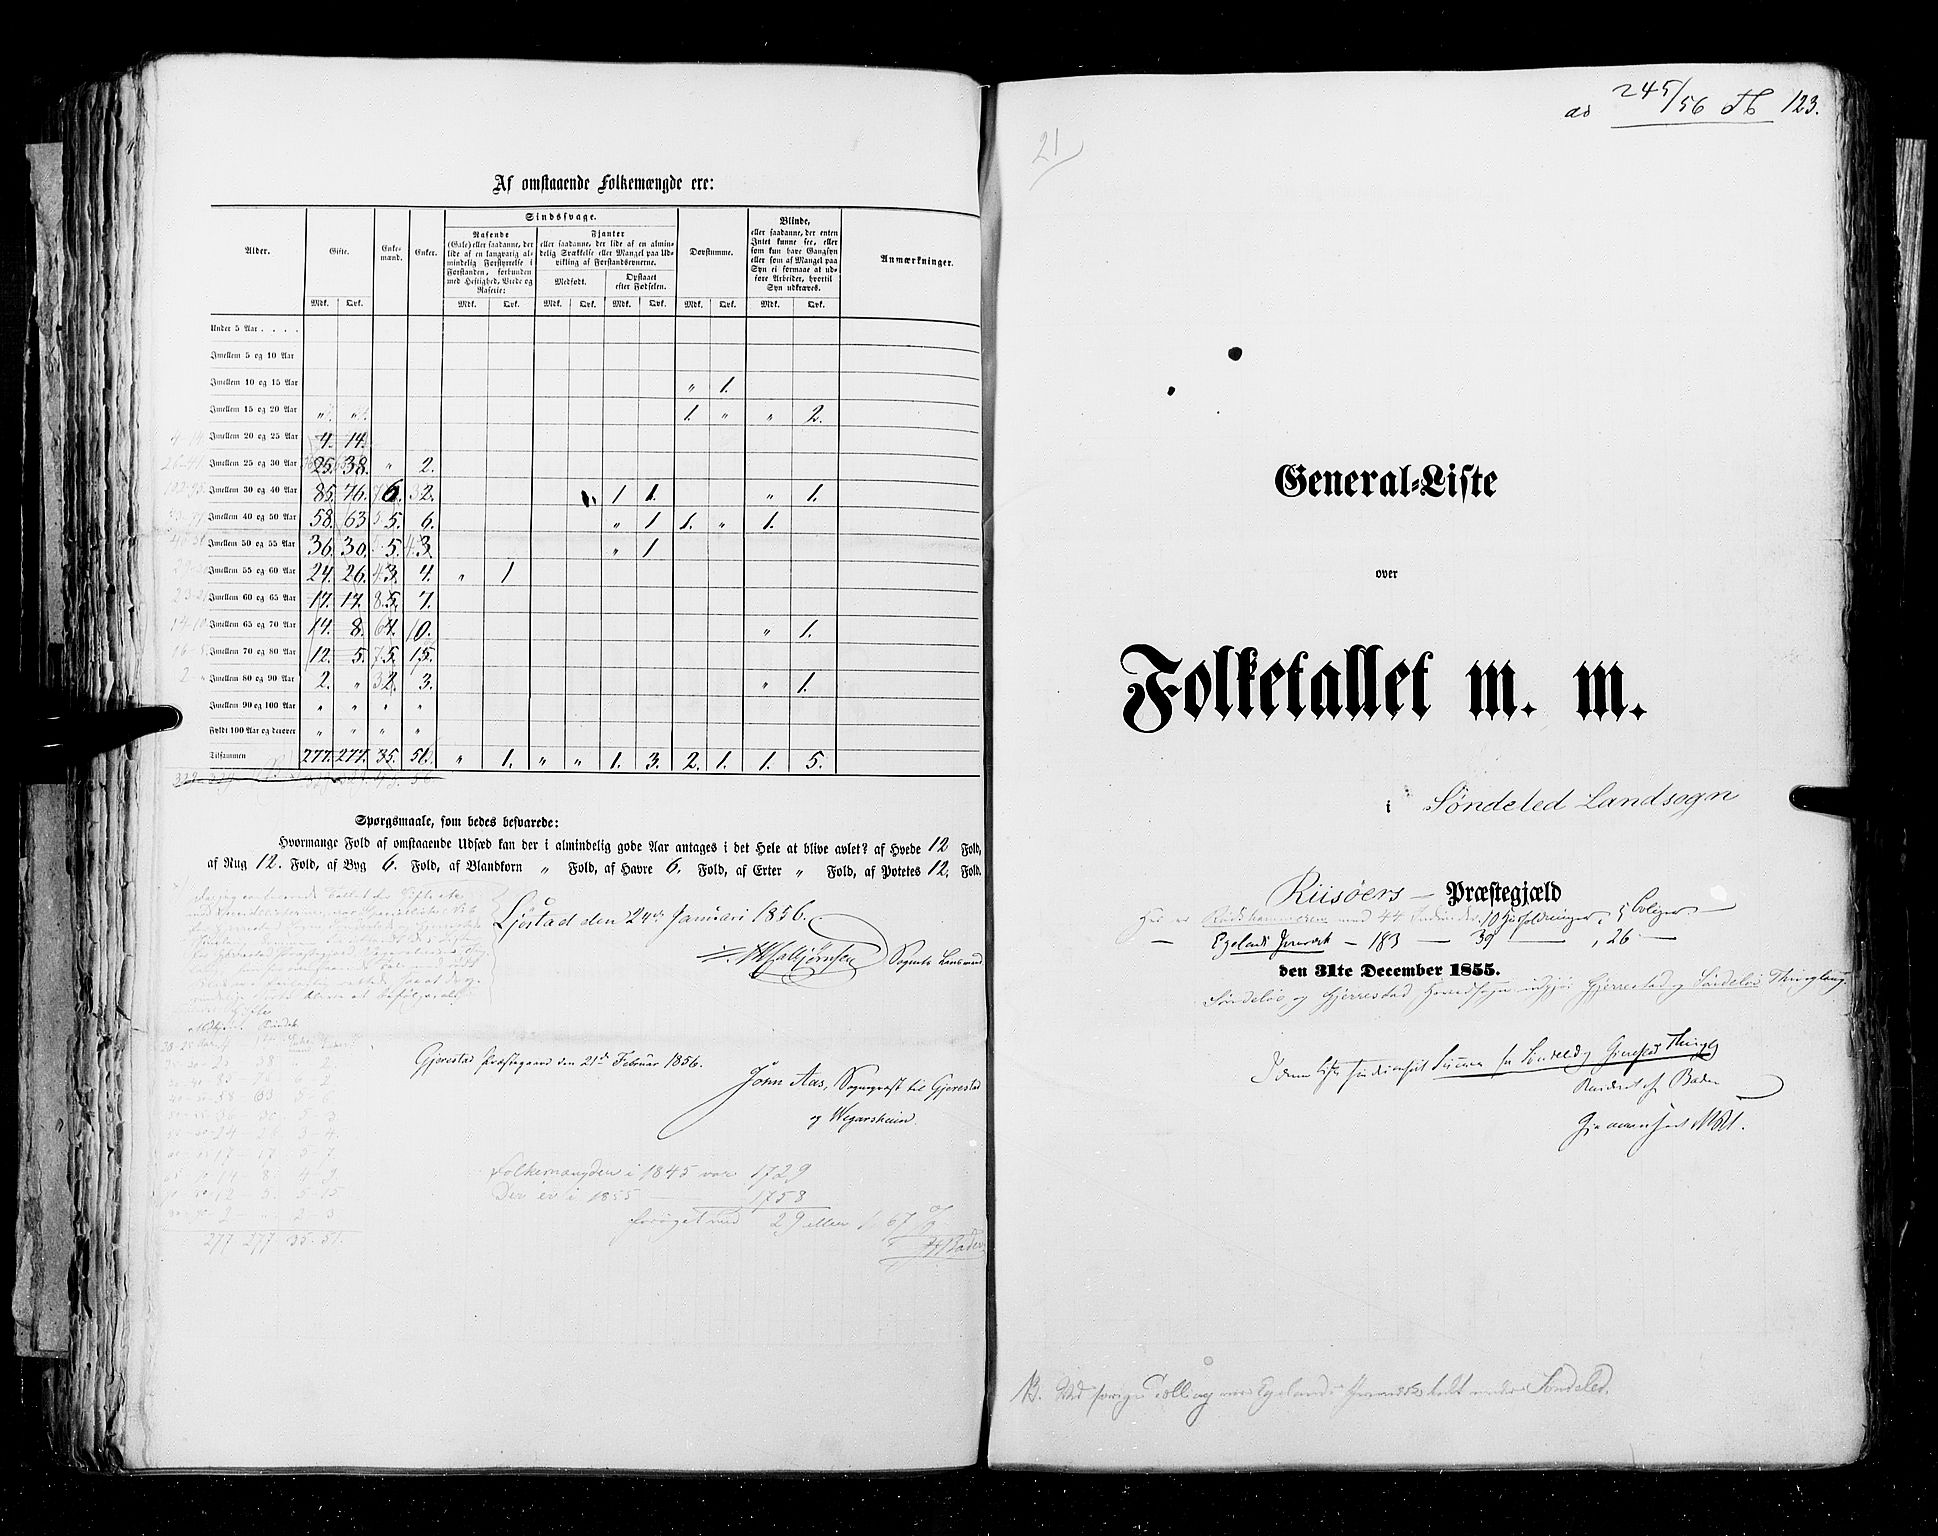 RA, Census 1855, vol. 3: Bratsberg amt, Nedenes amt og Lister og Mandal amt, 1855, p. 123